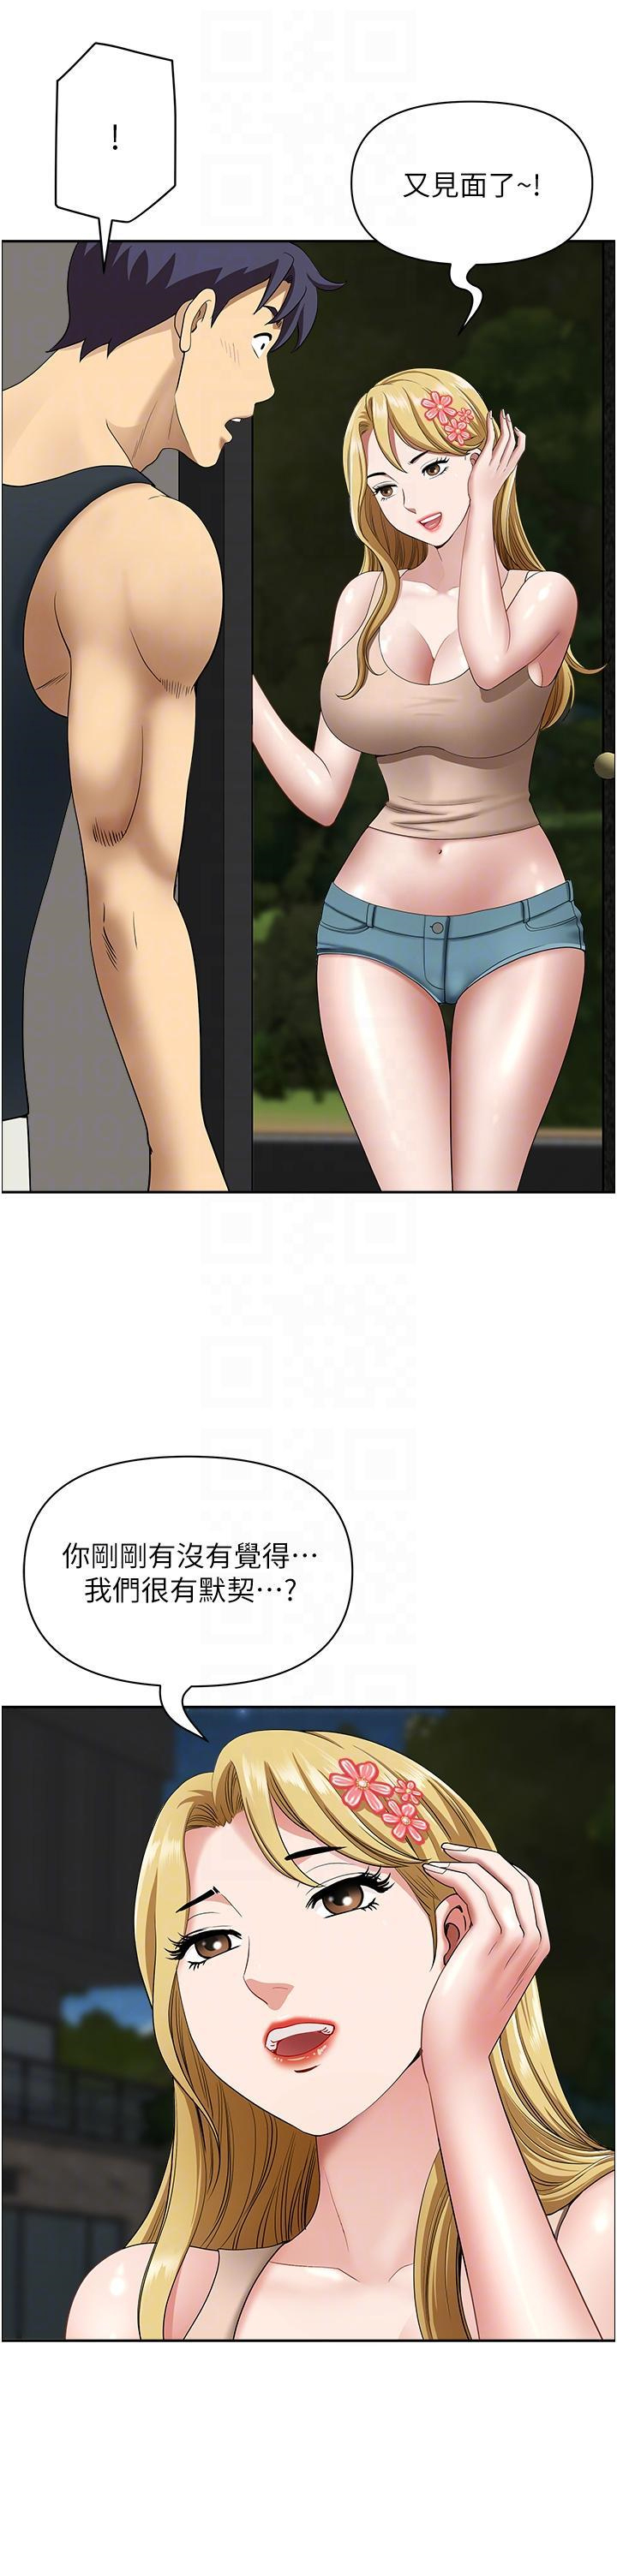 韩国污漫画 地方人妻們 第14话 一天干两个洞，赚烂了! 33